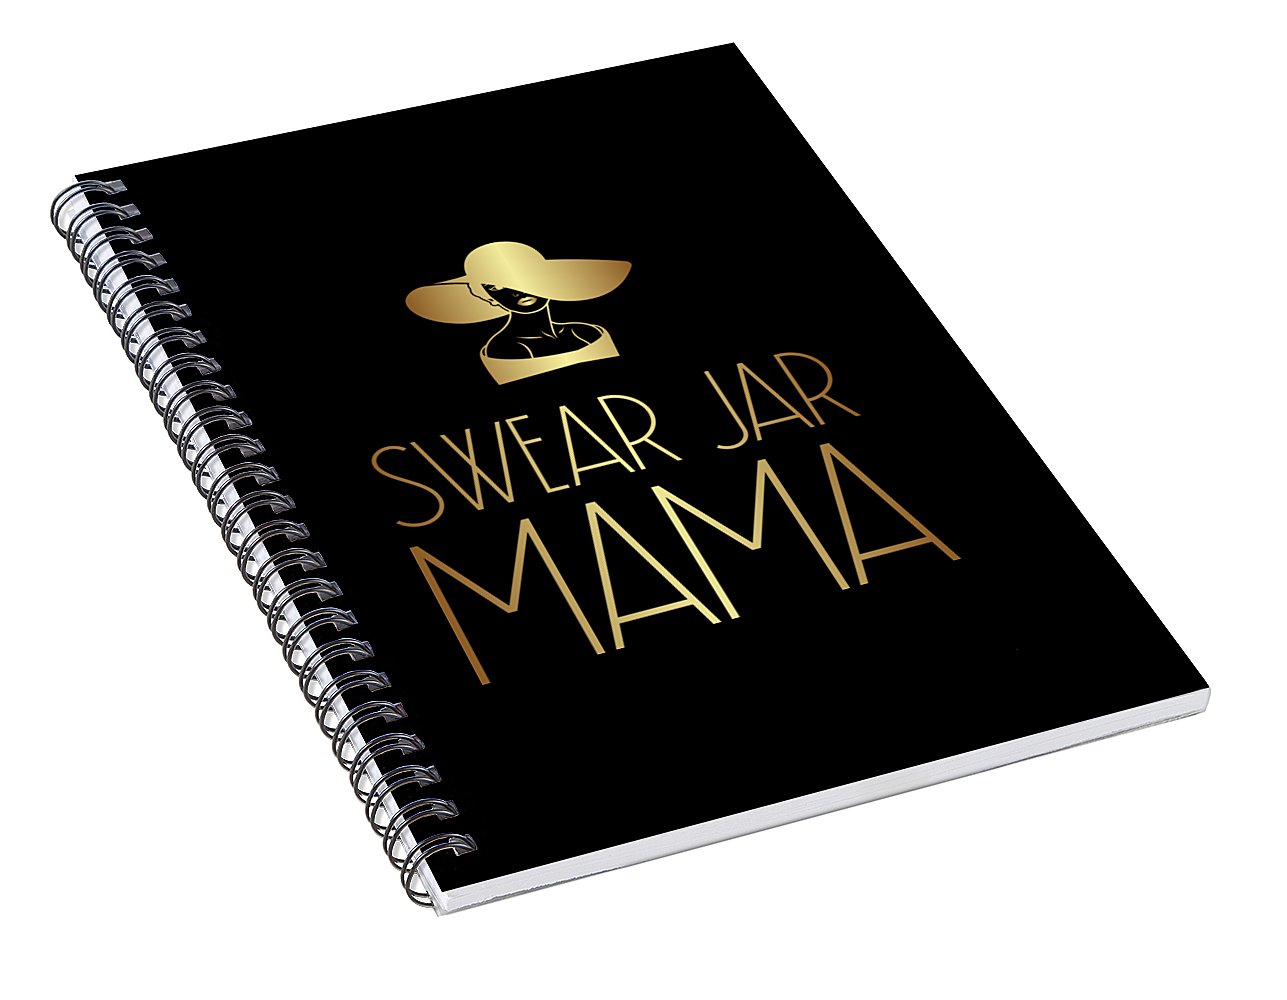 Swear Jar Mama - Spiral Notebook